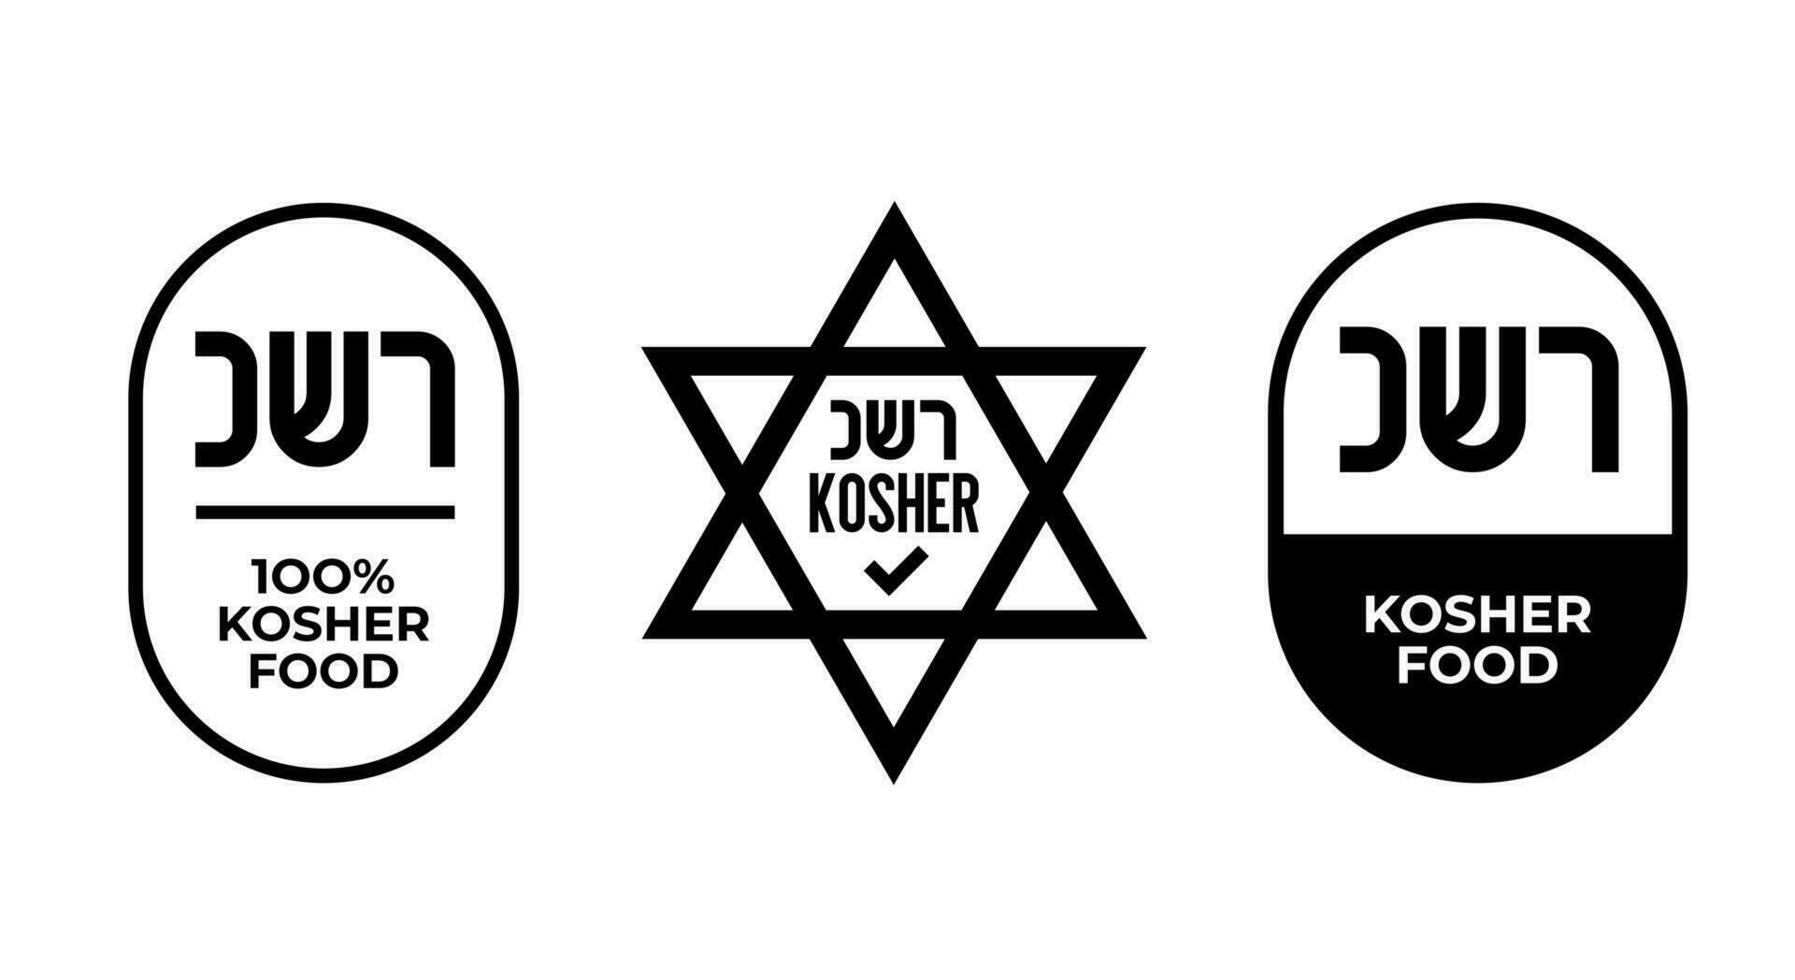 Kosher Certified symbols. International symbols of kosher food. Packaging concept. vector